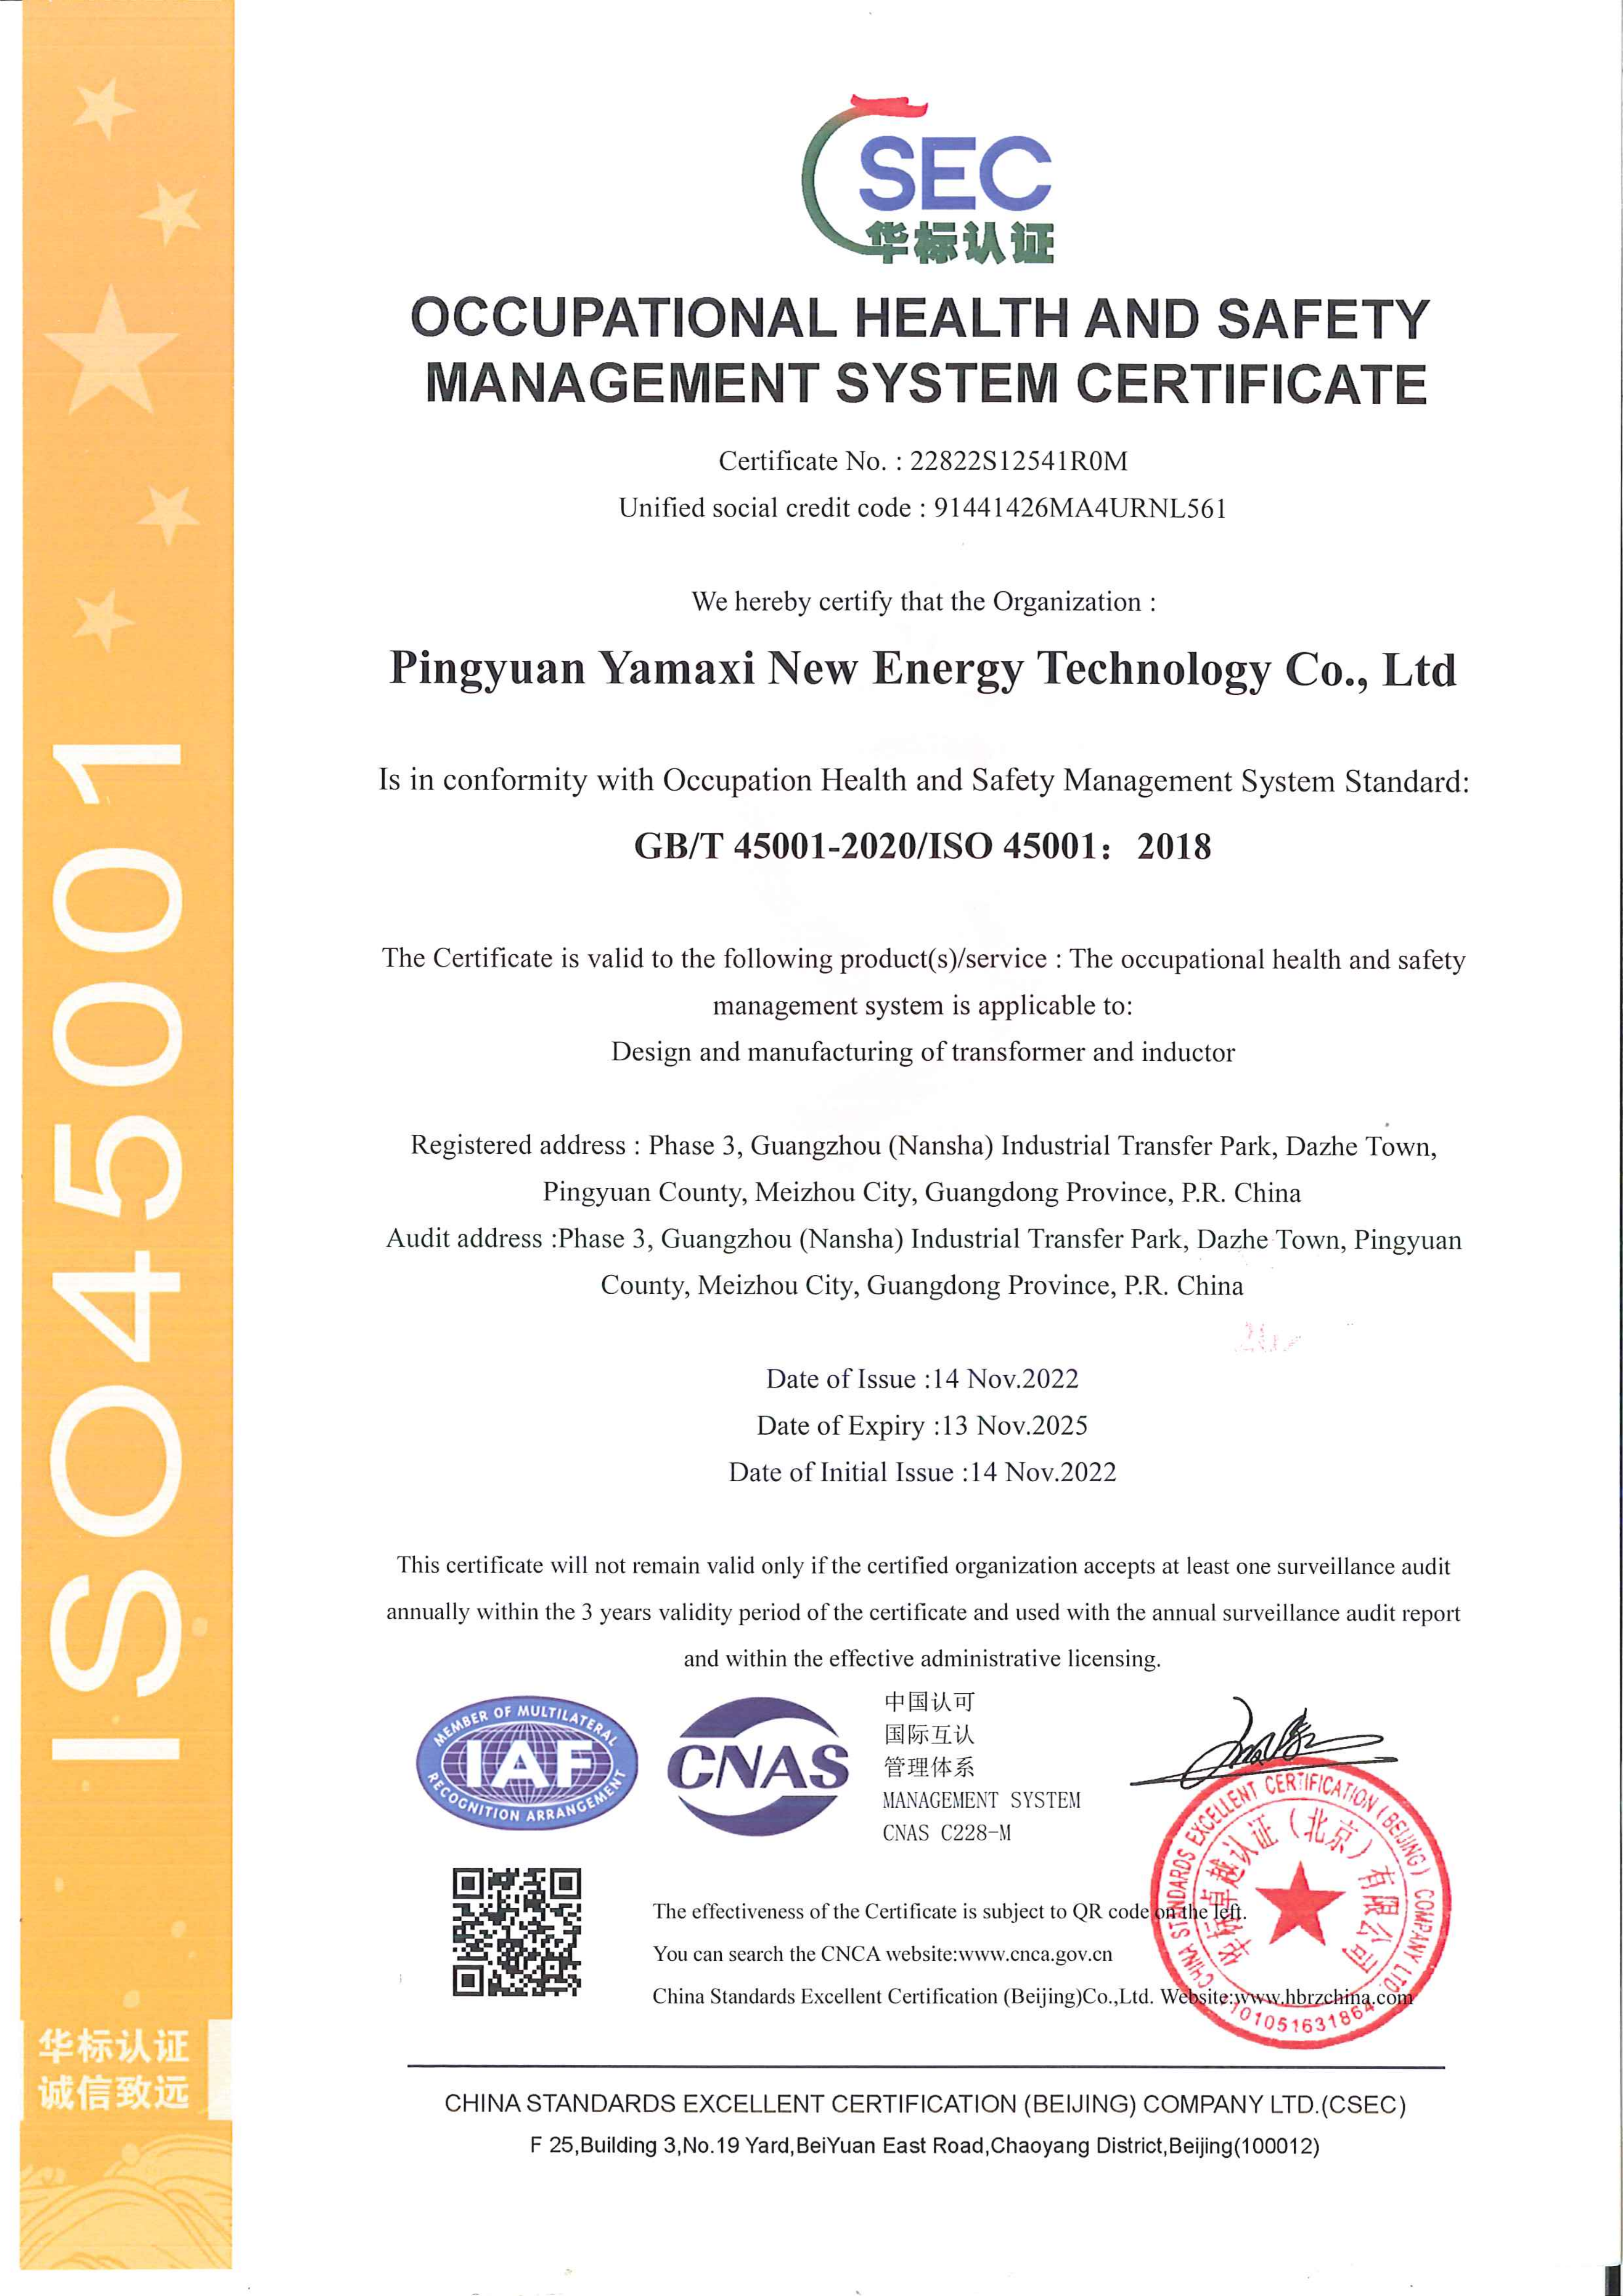 4.1 新能源-ISO45001证书--中文 2022.12.05_00